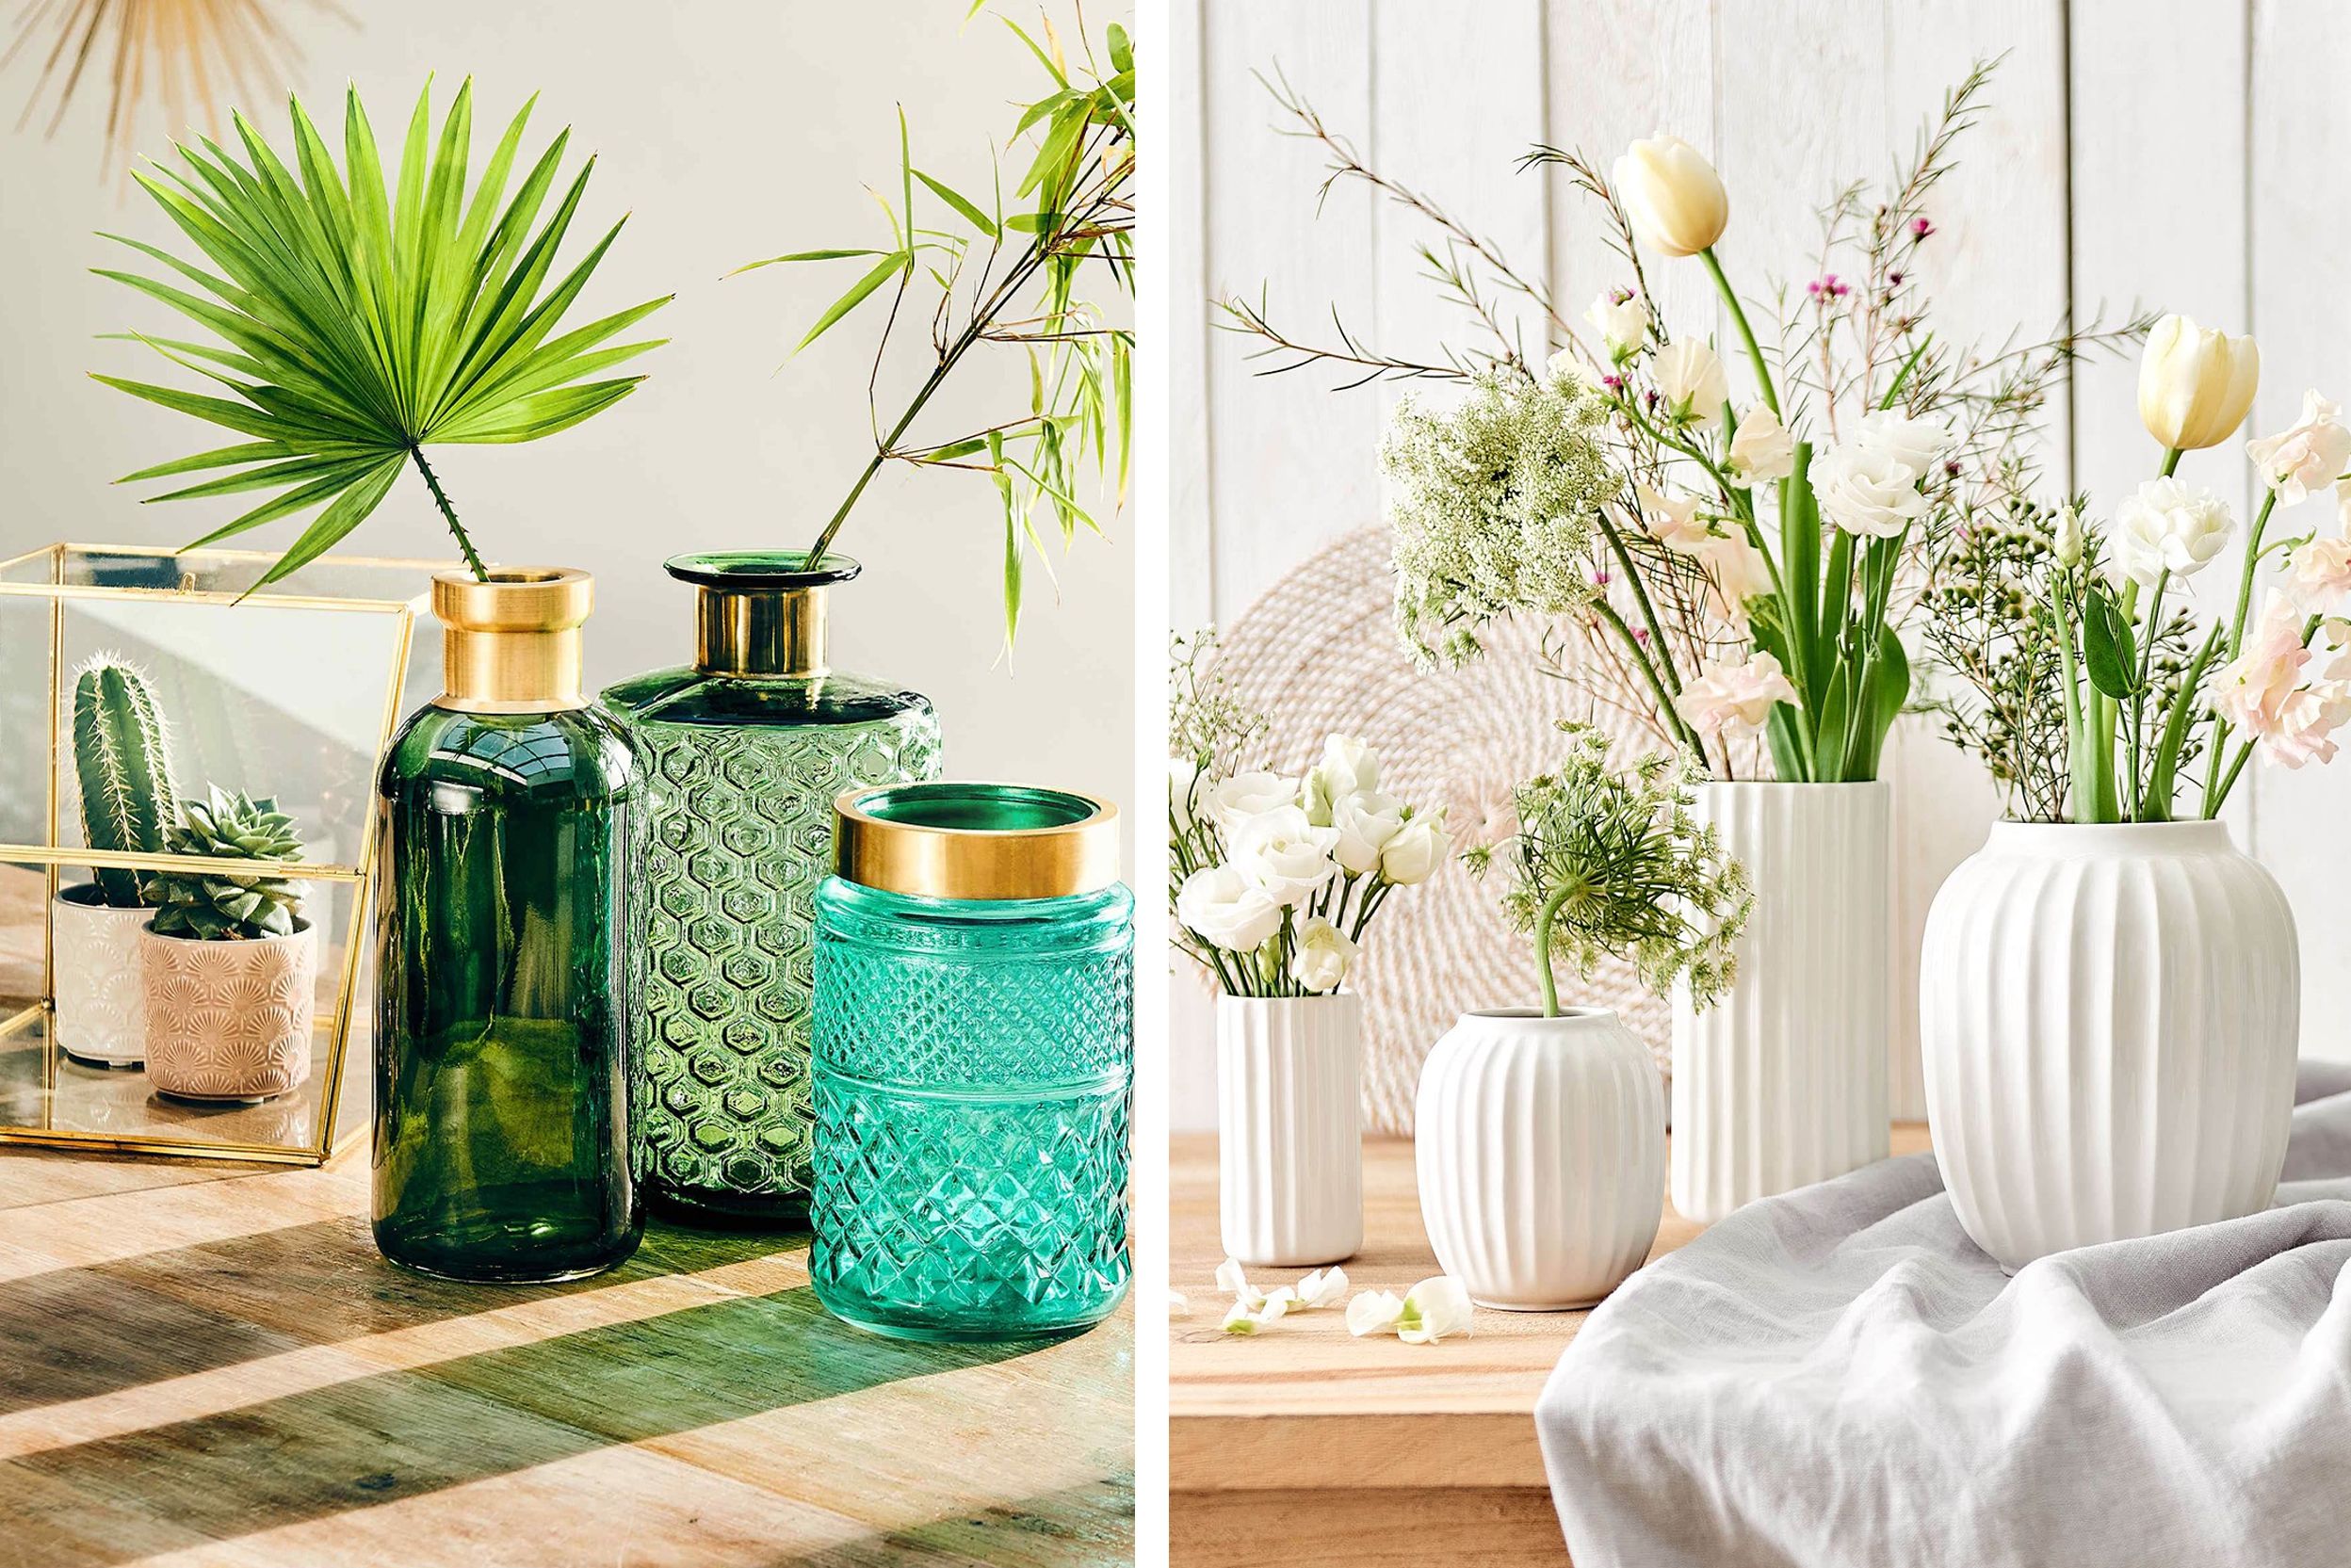 Grüne und weiße Vasen mit Blumen und Grünpflanzen